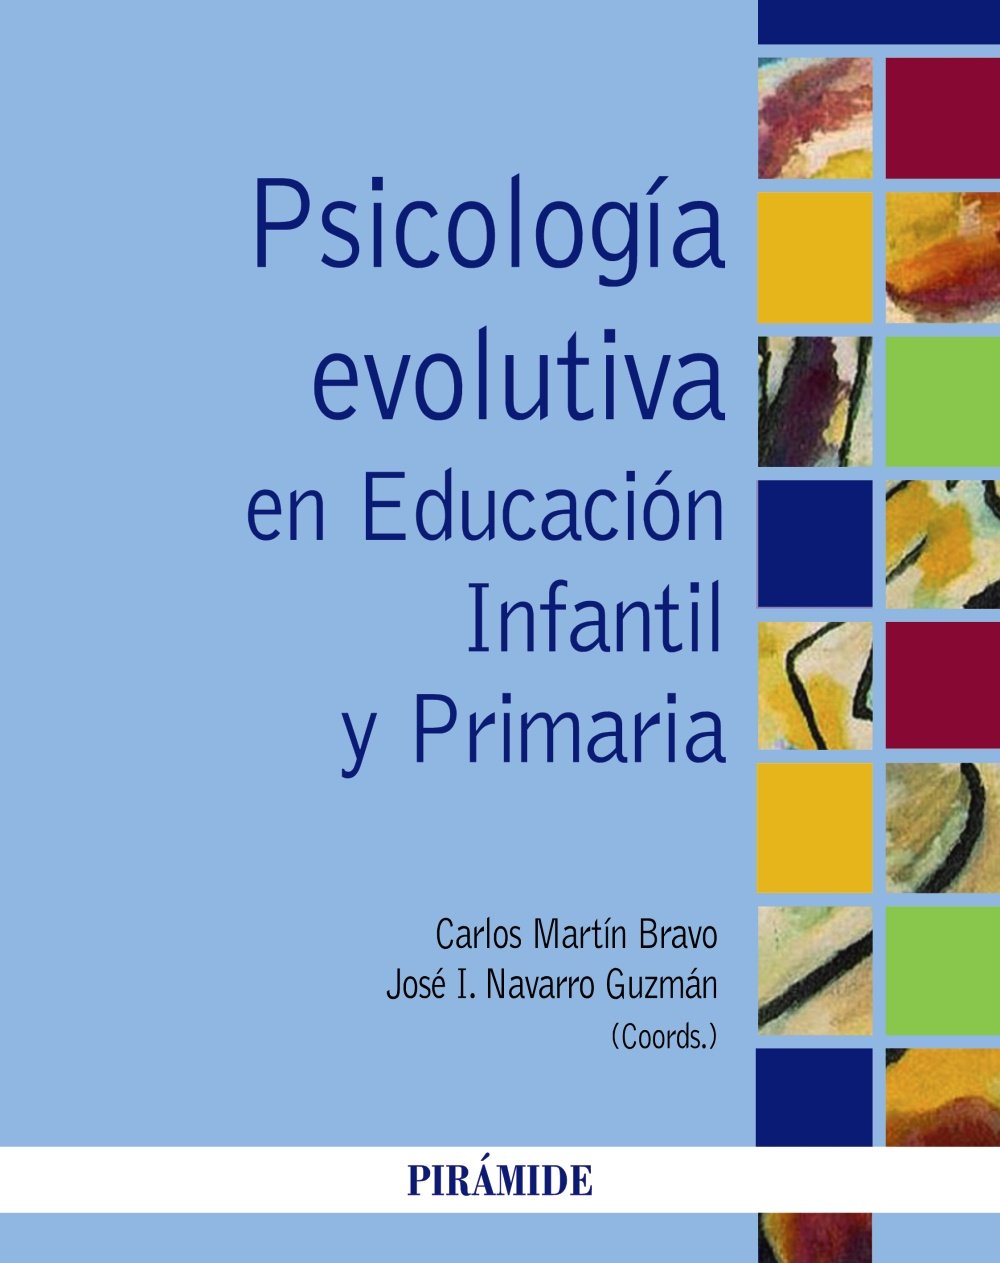 Imagen de portada del libro Psicología evolutiva en Educación Infantil y Primaria